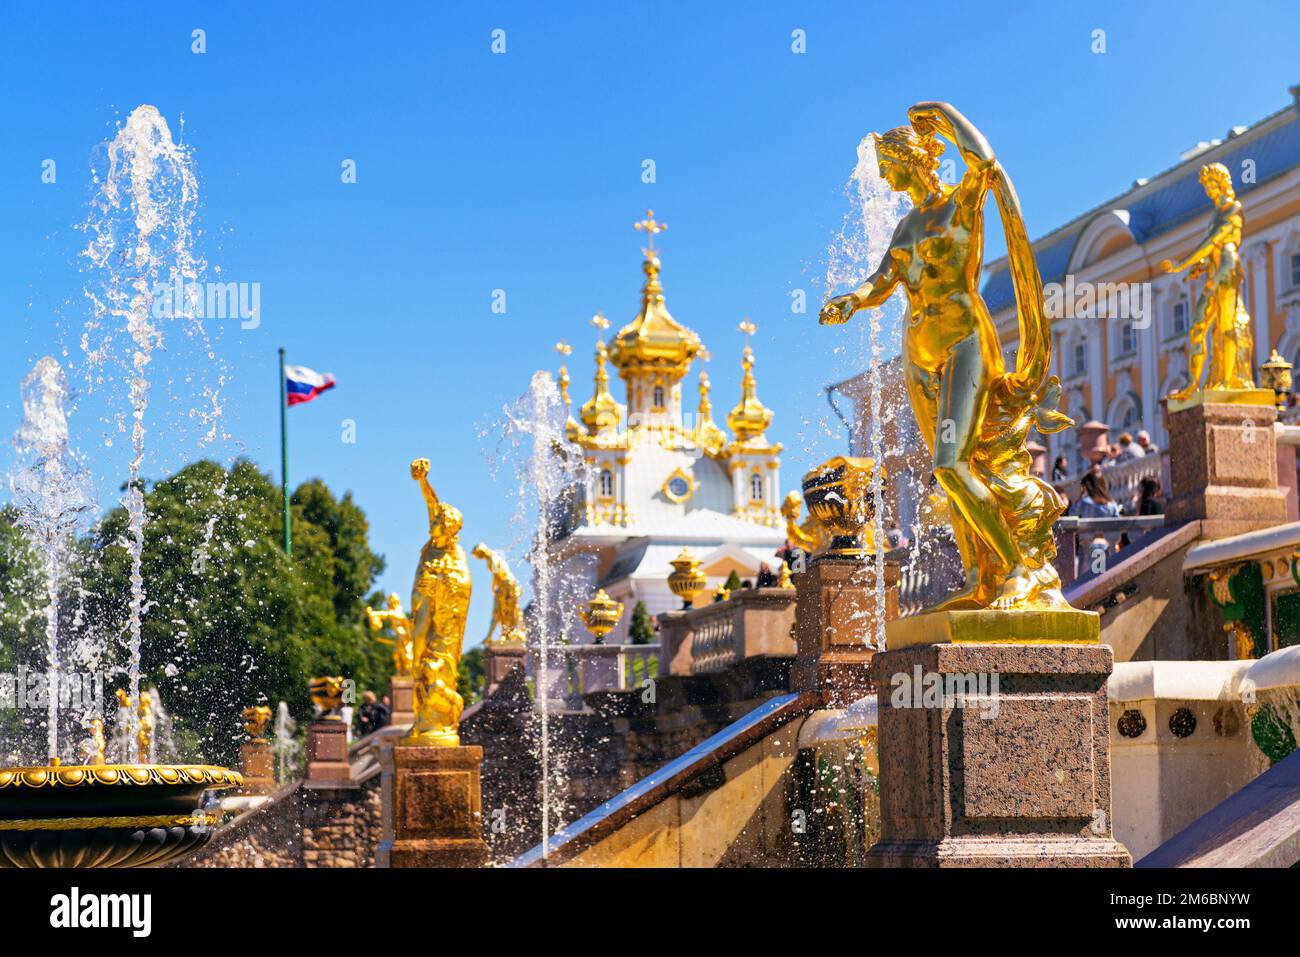 Goldene Statuen im Schloss Peterhof in der Nähe von St. Petersburg, Russland. Schloss Peterhof ist eine berühmte Touristenattraktion. Thema von Stockfoto